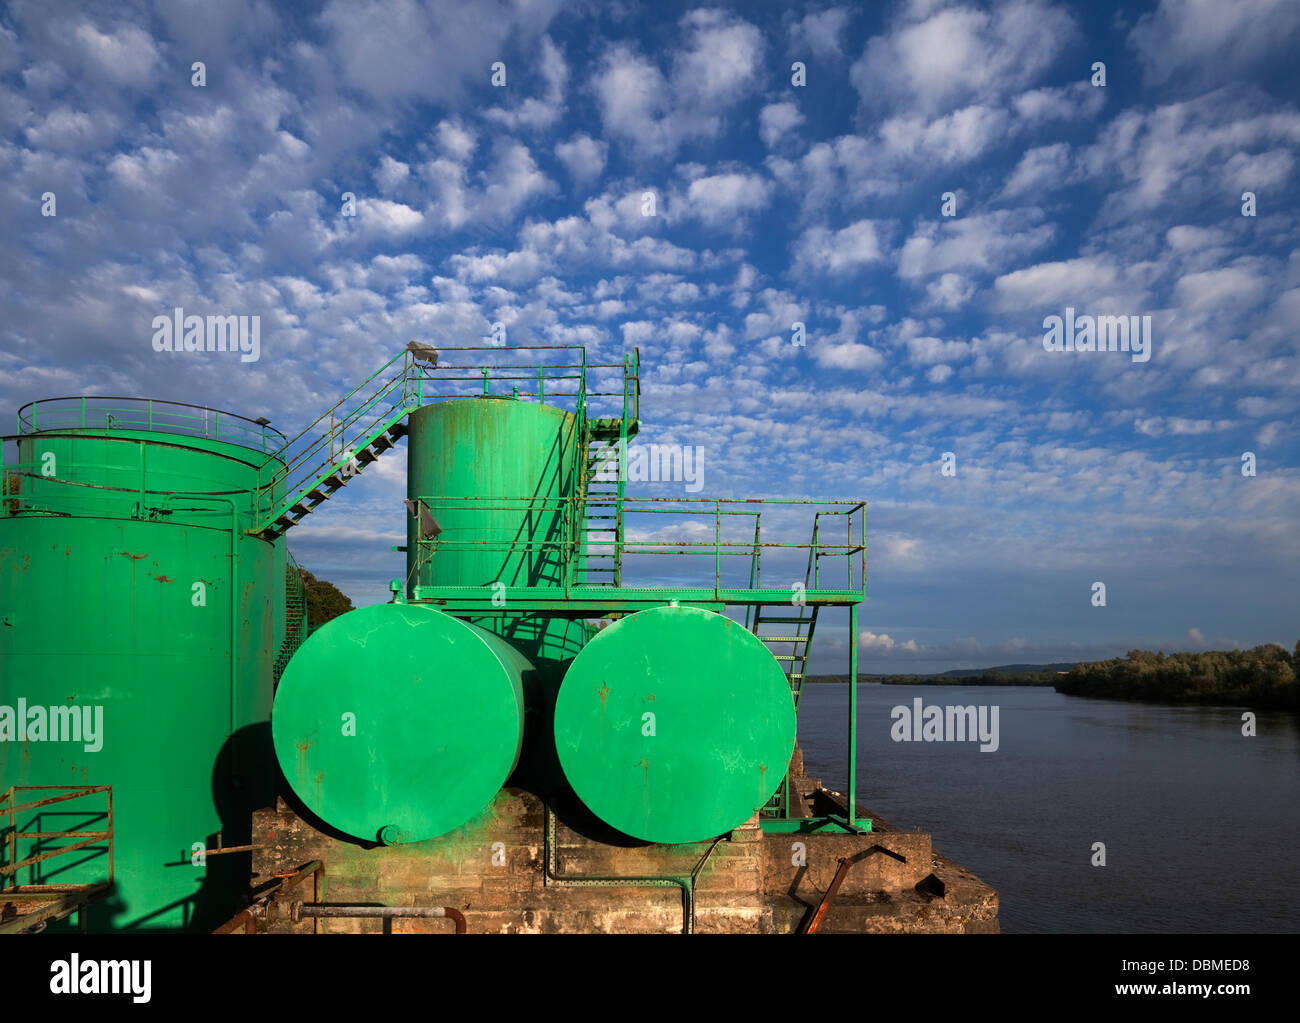 Morris Dépôt pétrolier sur la rivière Suir, Fiddown, County Kilkenny, Ireland Banque D'Images